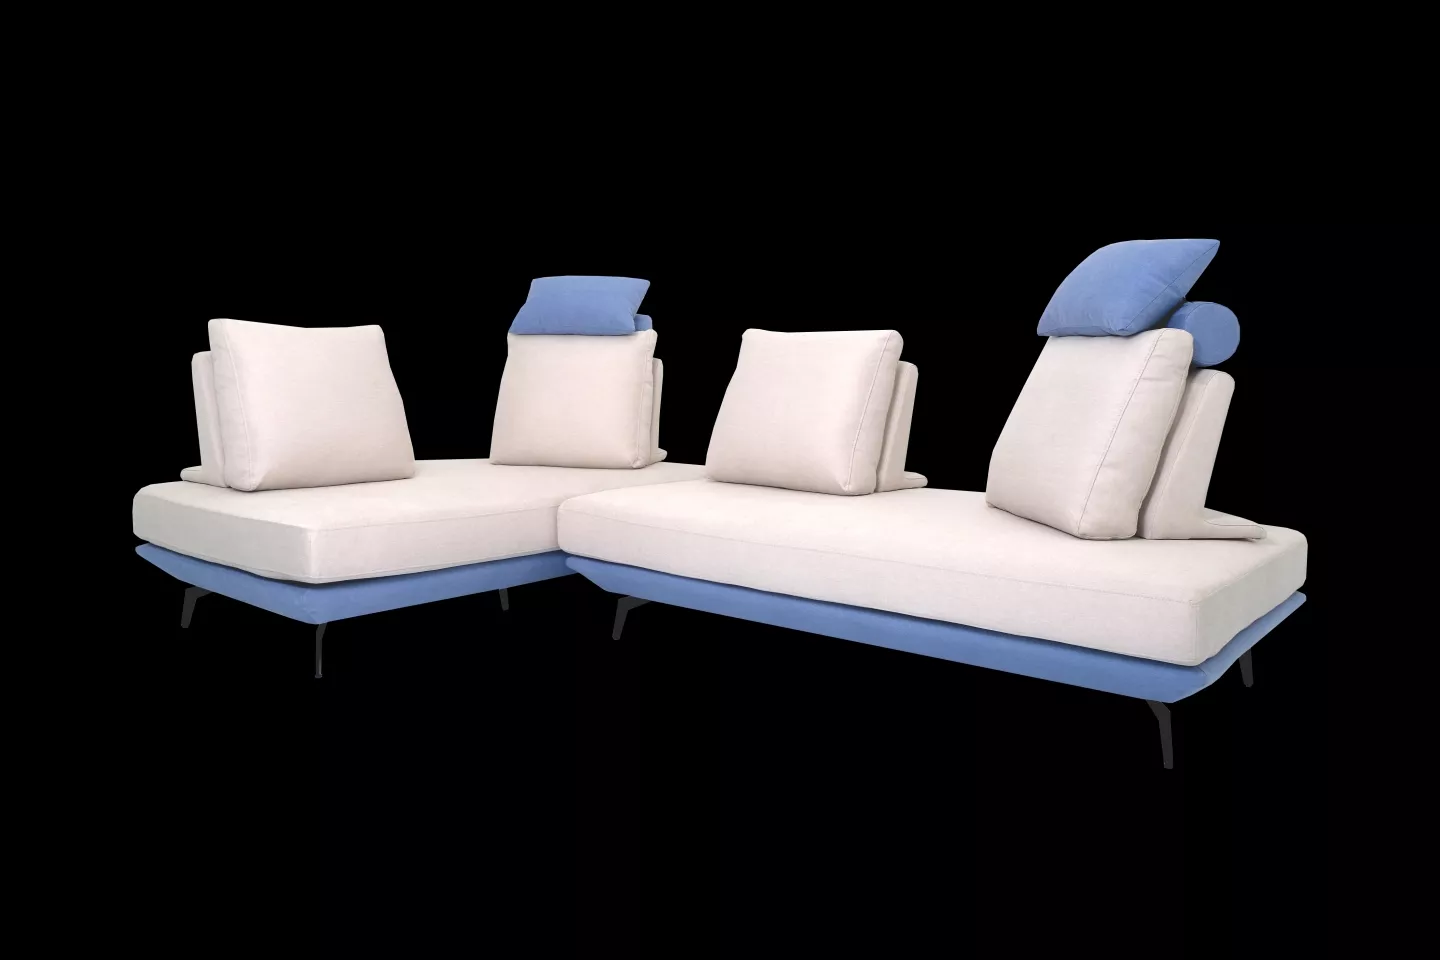 多功能布沙發,型號蒂尼TINI S2309 實際拍攝沙發整體照片